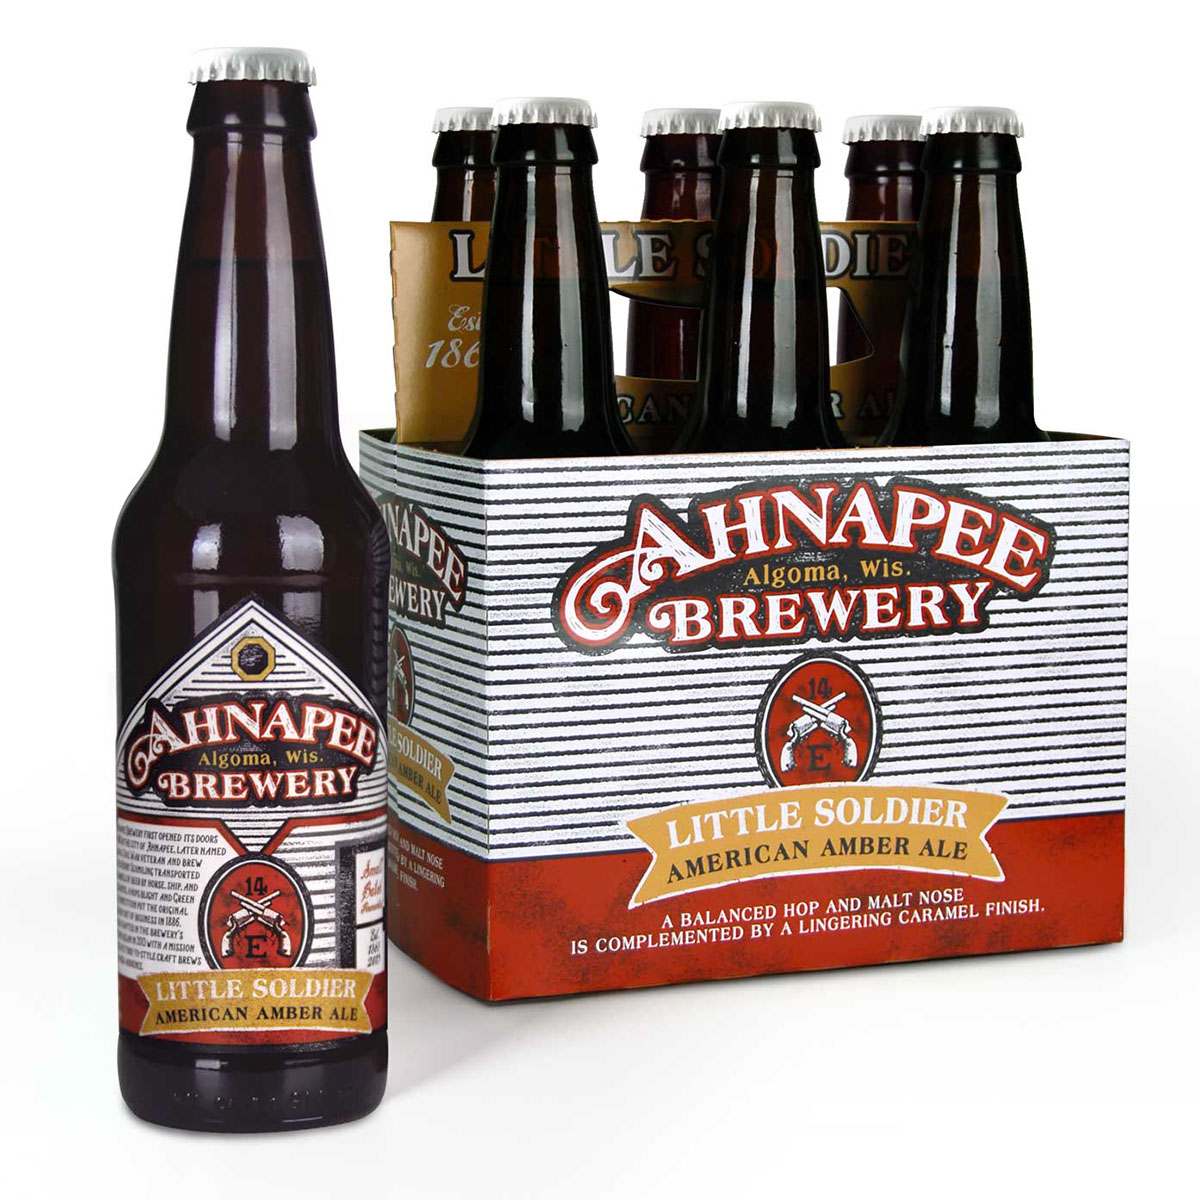 Ahnapee Brewery craft beer packaging Beer label designers craft beer labels Beer Packaging